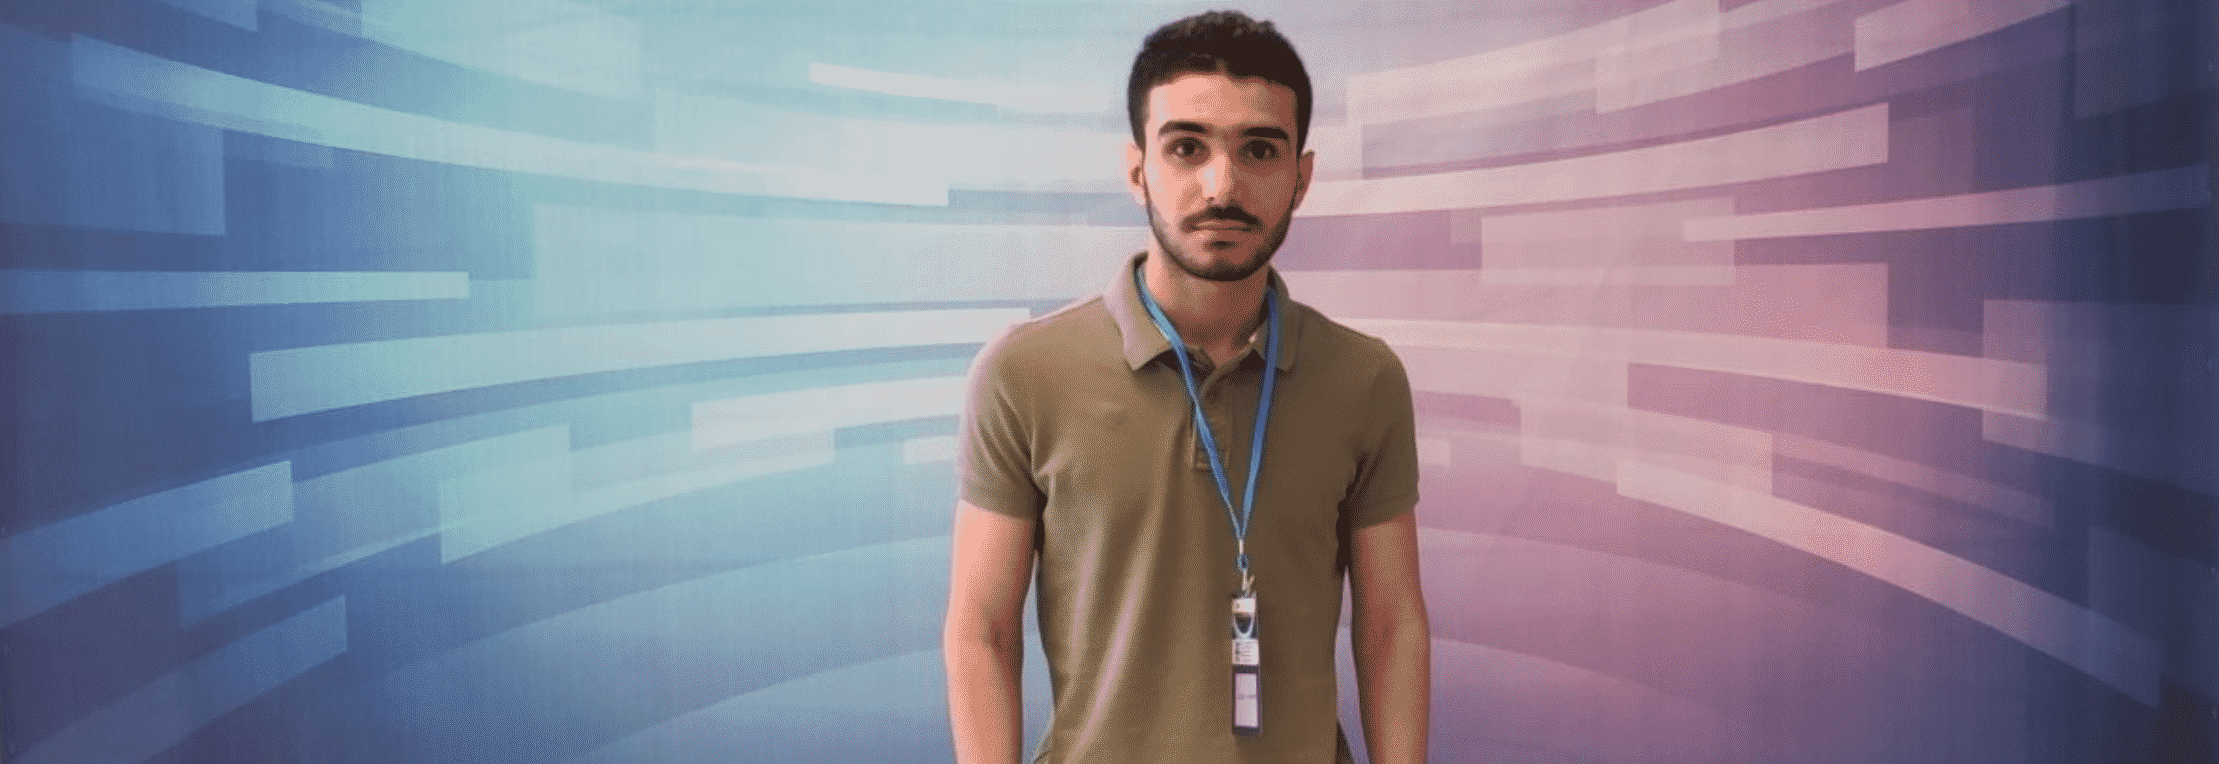 Screen Shot 2019 07 18 at 11.48.32 AM طالب عراقي مقيم في تركيا، يقدم خوارزمية للذكاء الاصطناعي لتشخيص احتشاء عضلة القلب مجلة نقطة العلمية